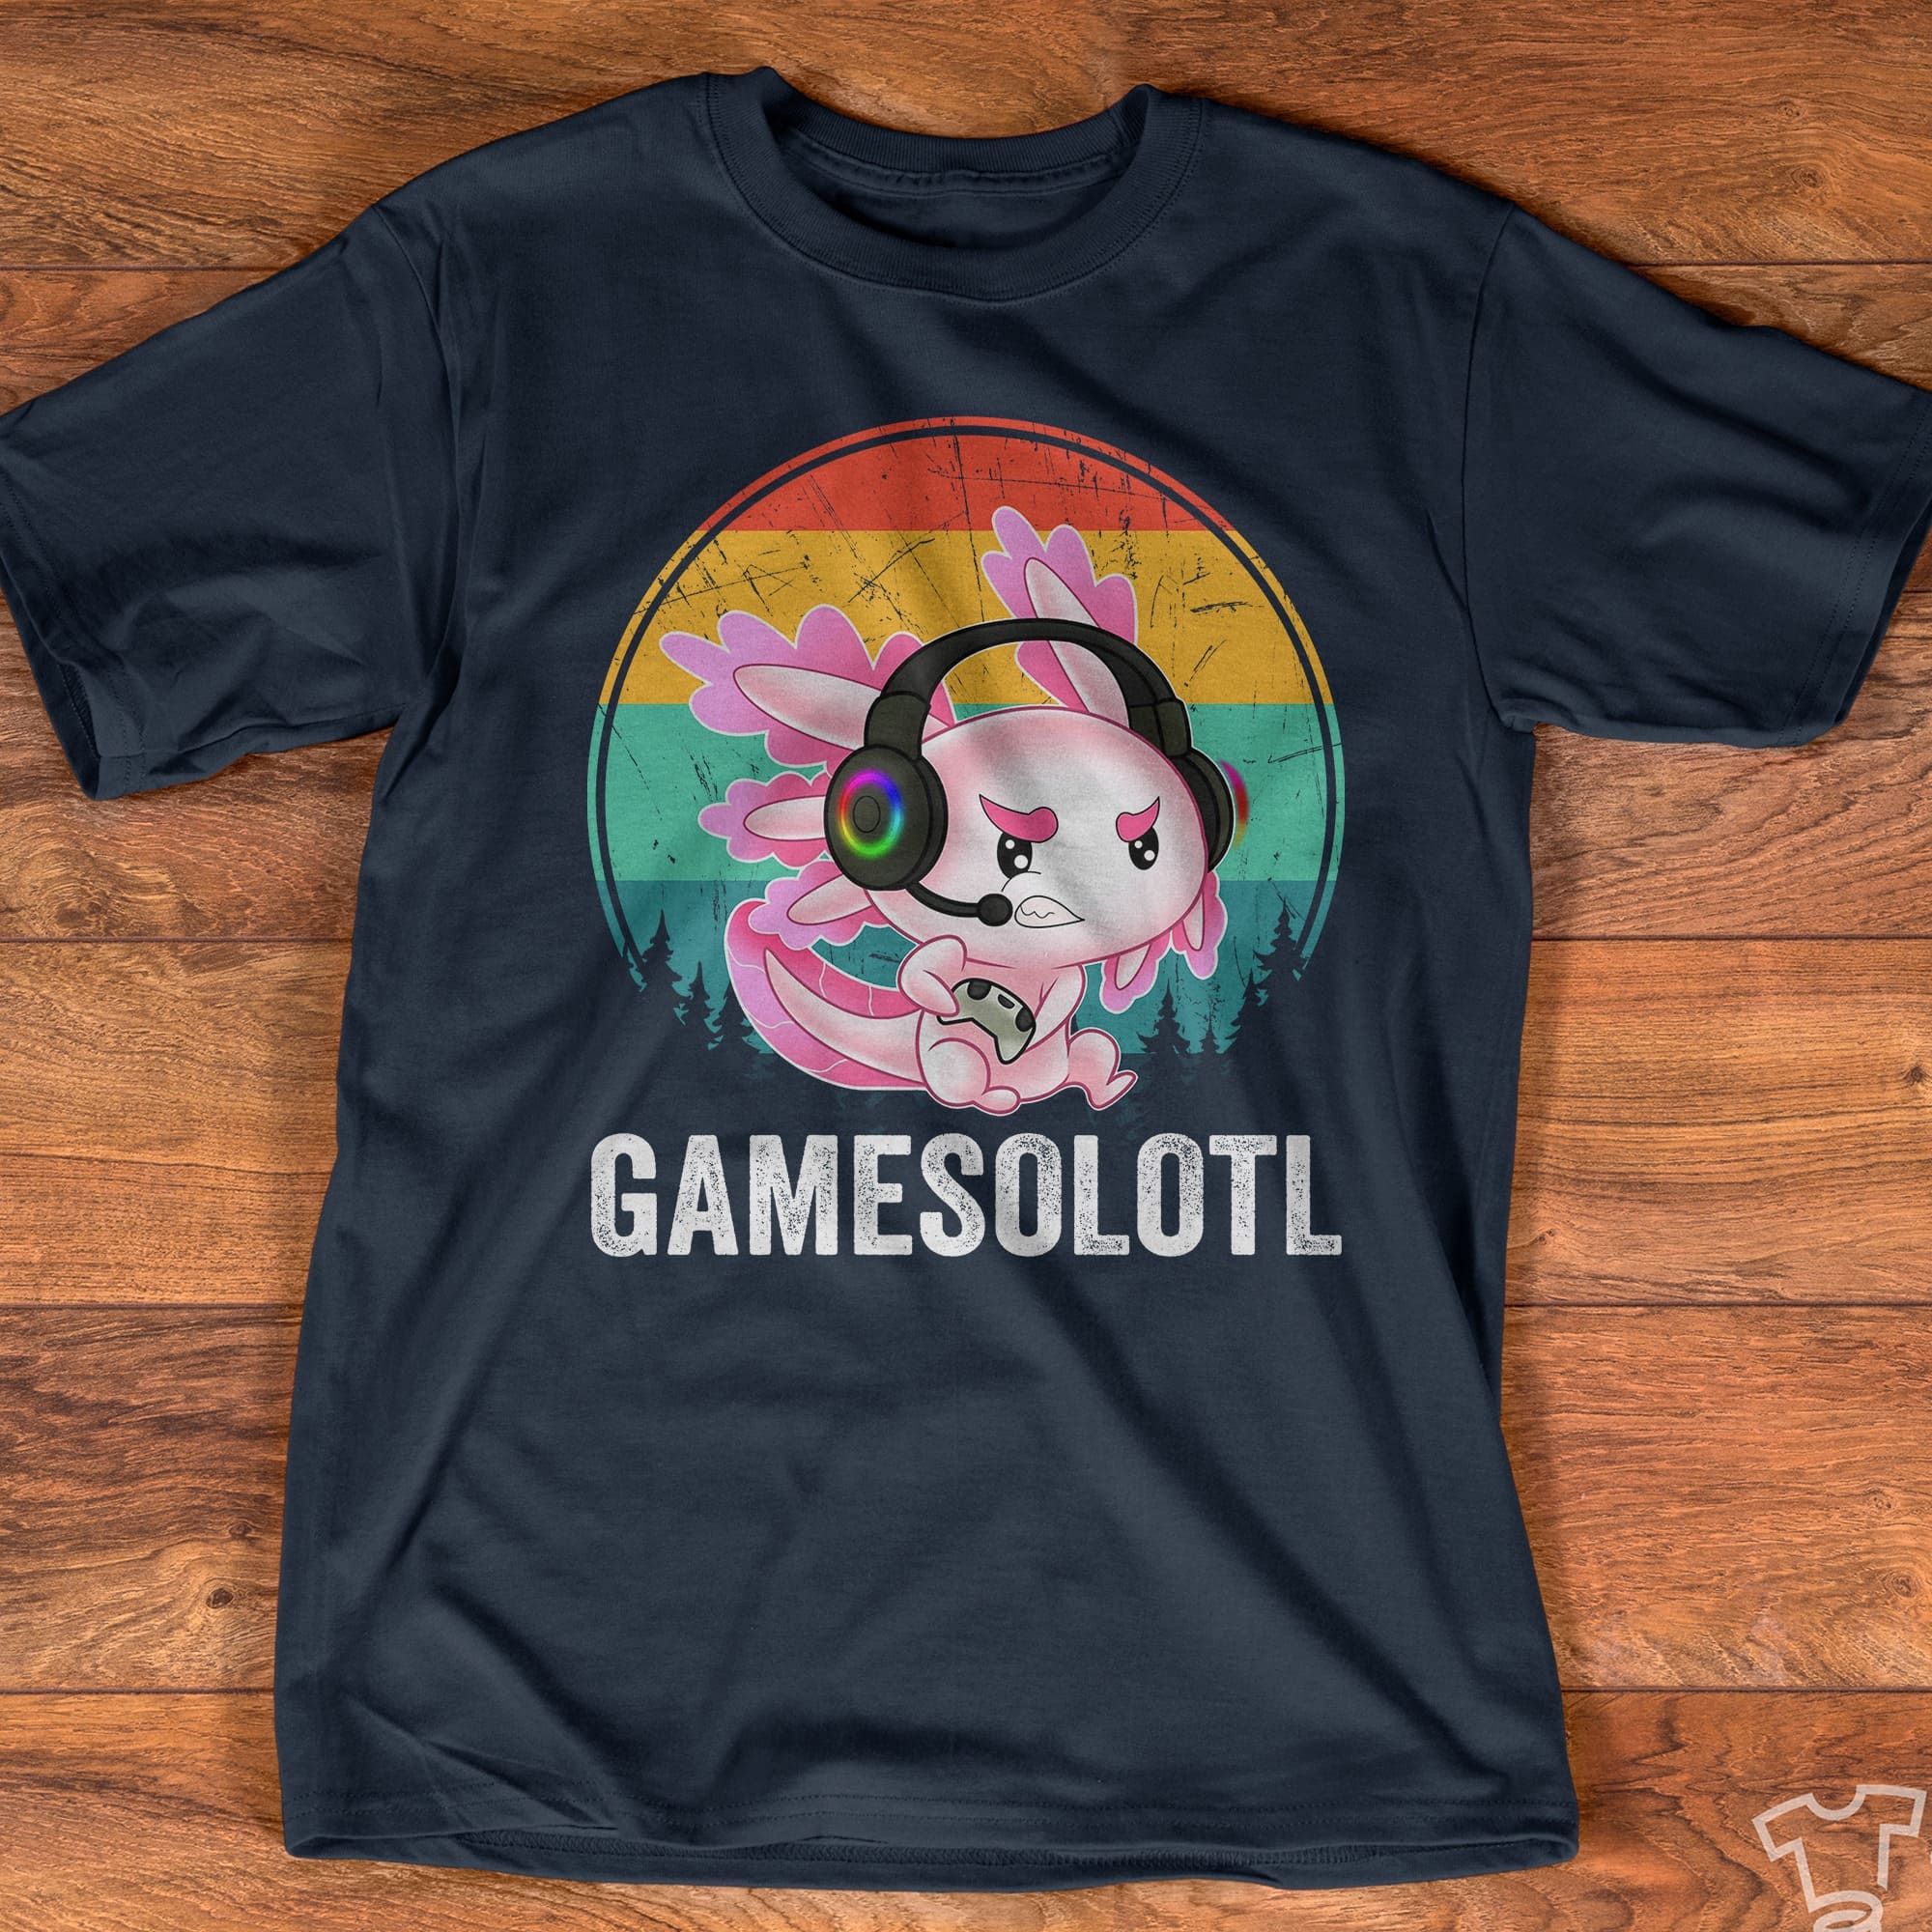 Gamesolotl axolotl - Mexico axolotl animal, gift for gaming people